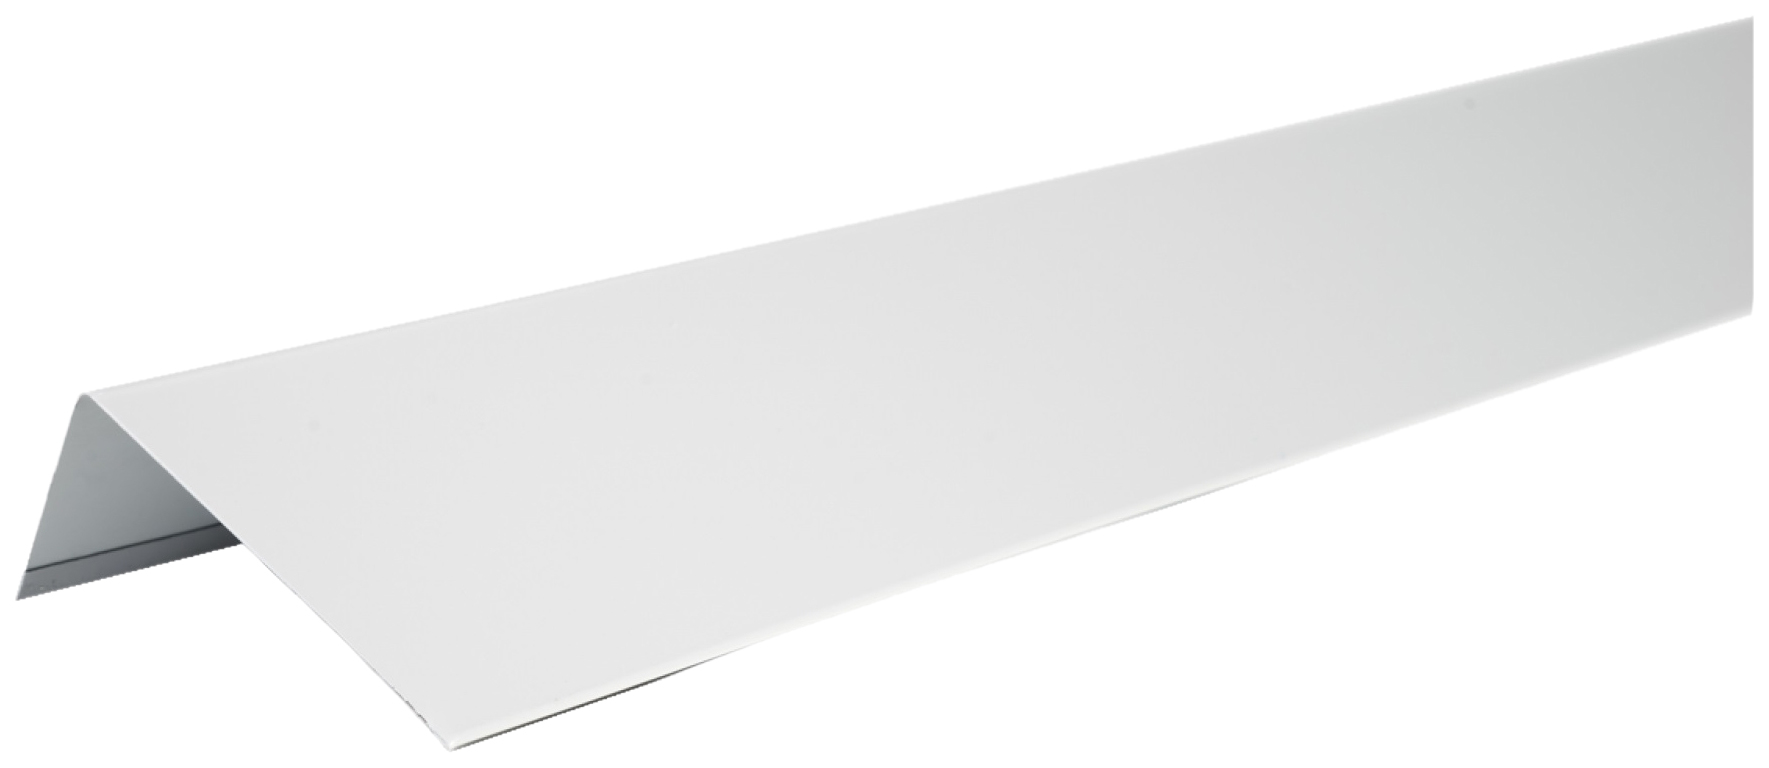 фото Технониколь hauberk наличник оконный металлический, полиэстер, ral 7004 серый, шт. tn56921